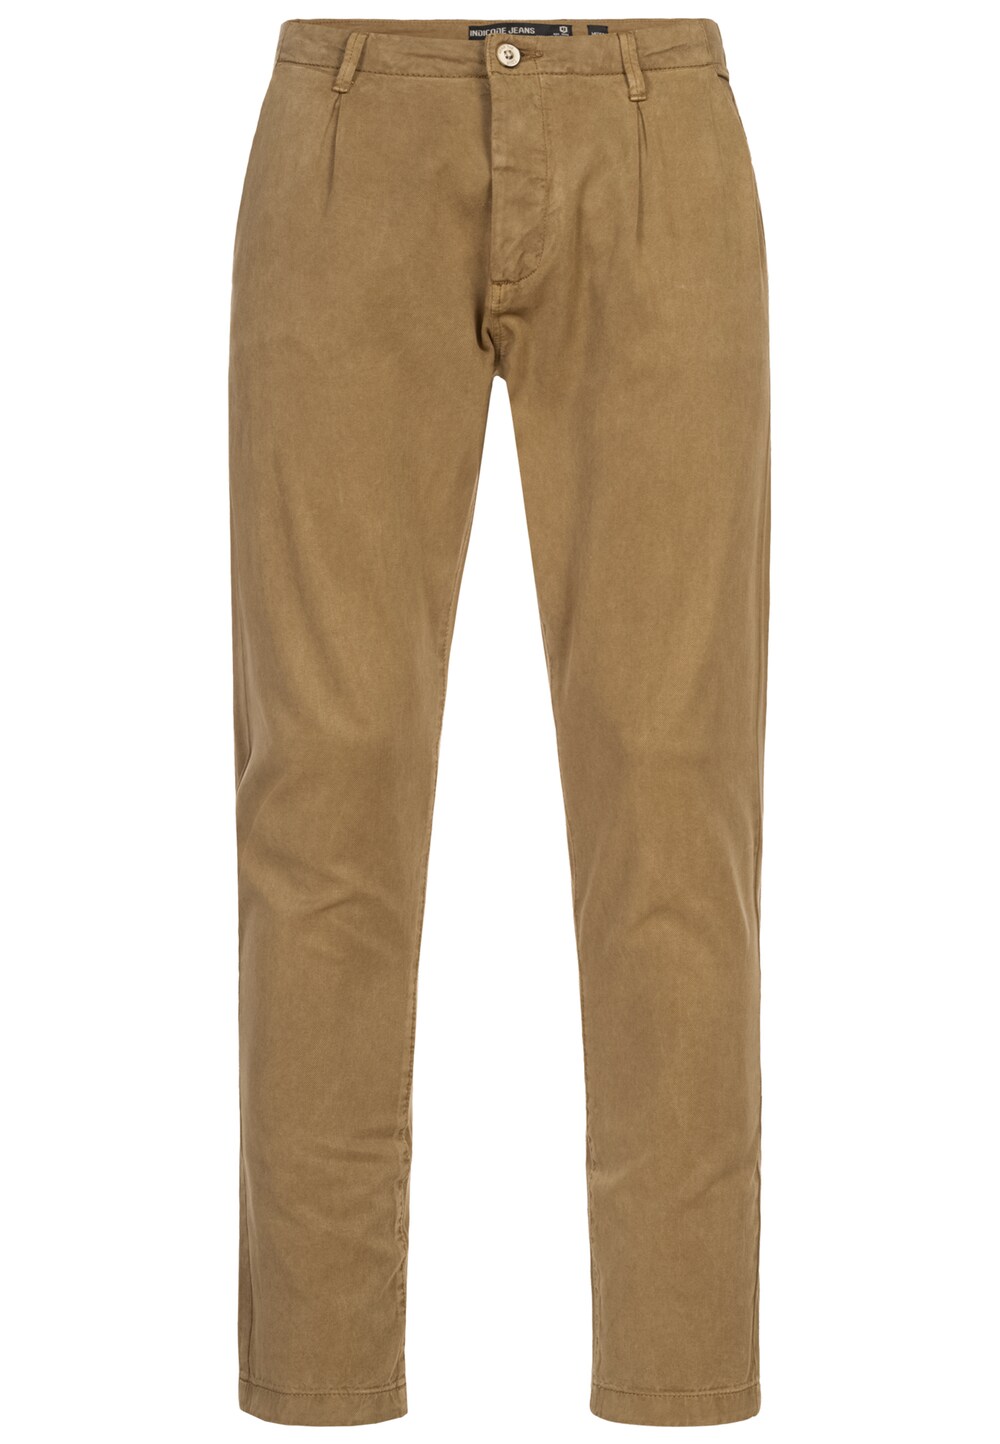 Обычные брюки чинос INDICODE JEANS Ville, коричневый обычные брюки чинос indicode jeans ville бежевый